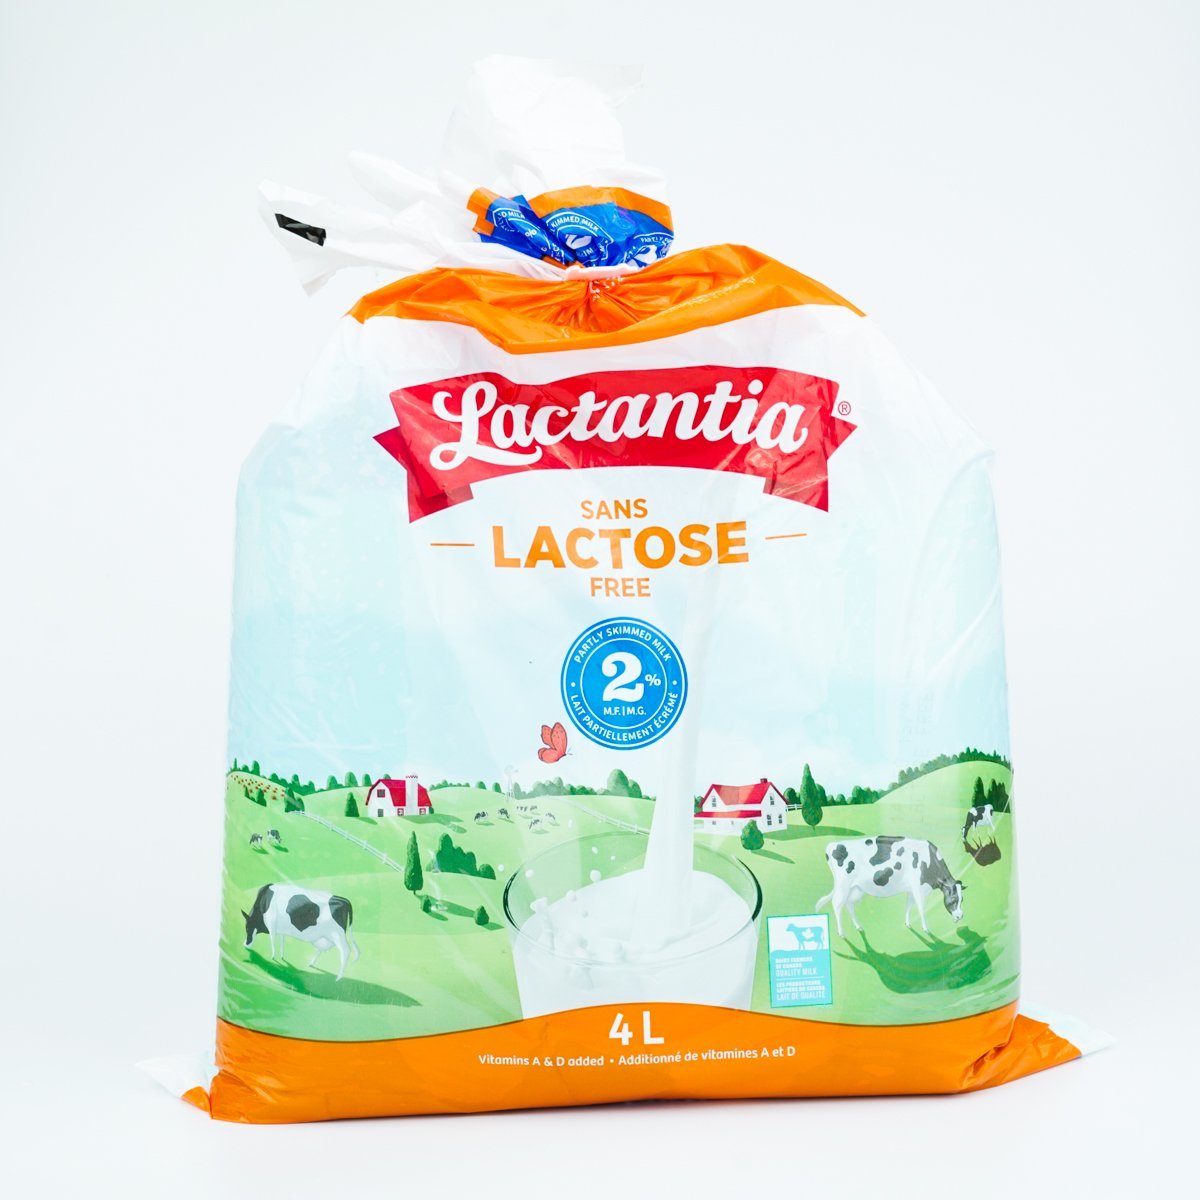 Lactantia 2% Lactose Skimmed Milk